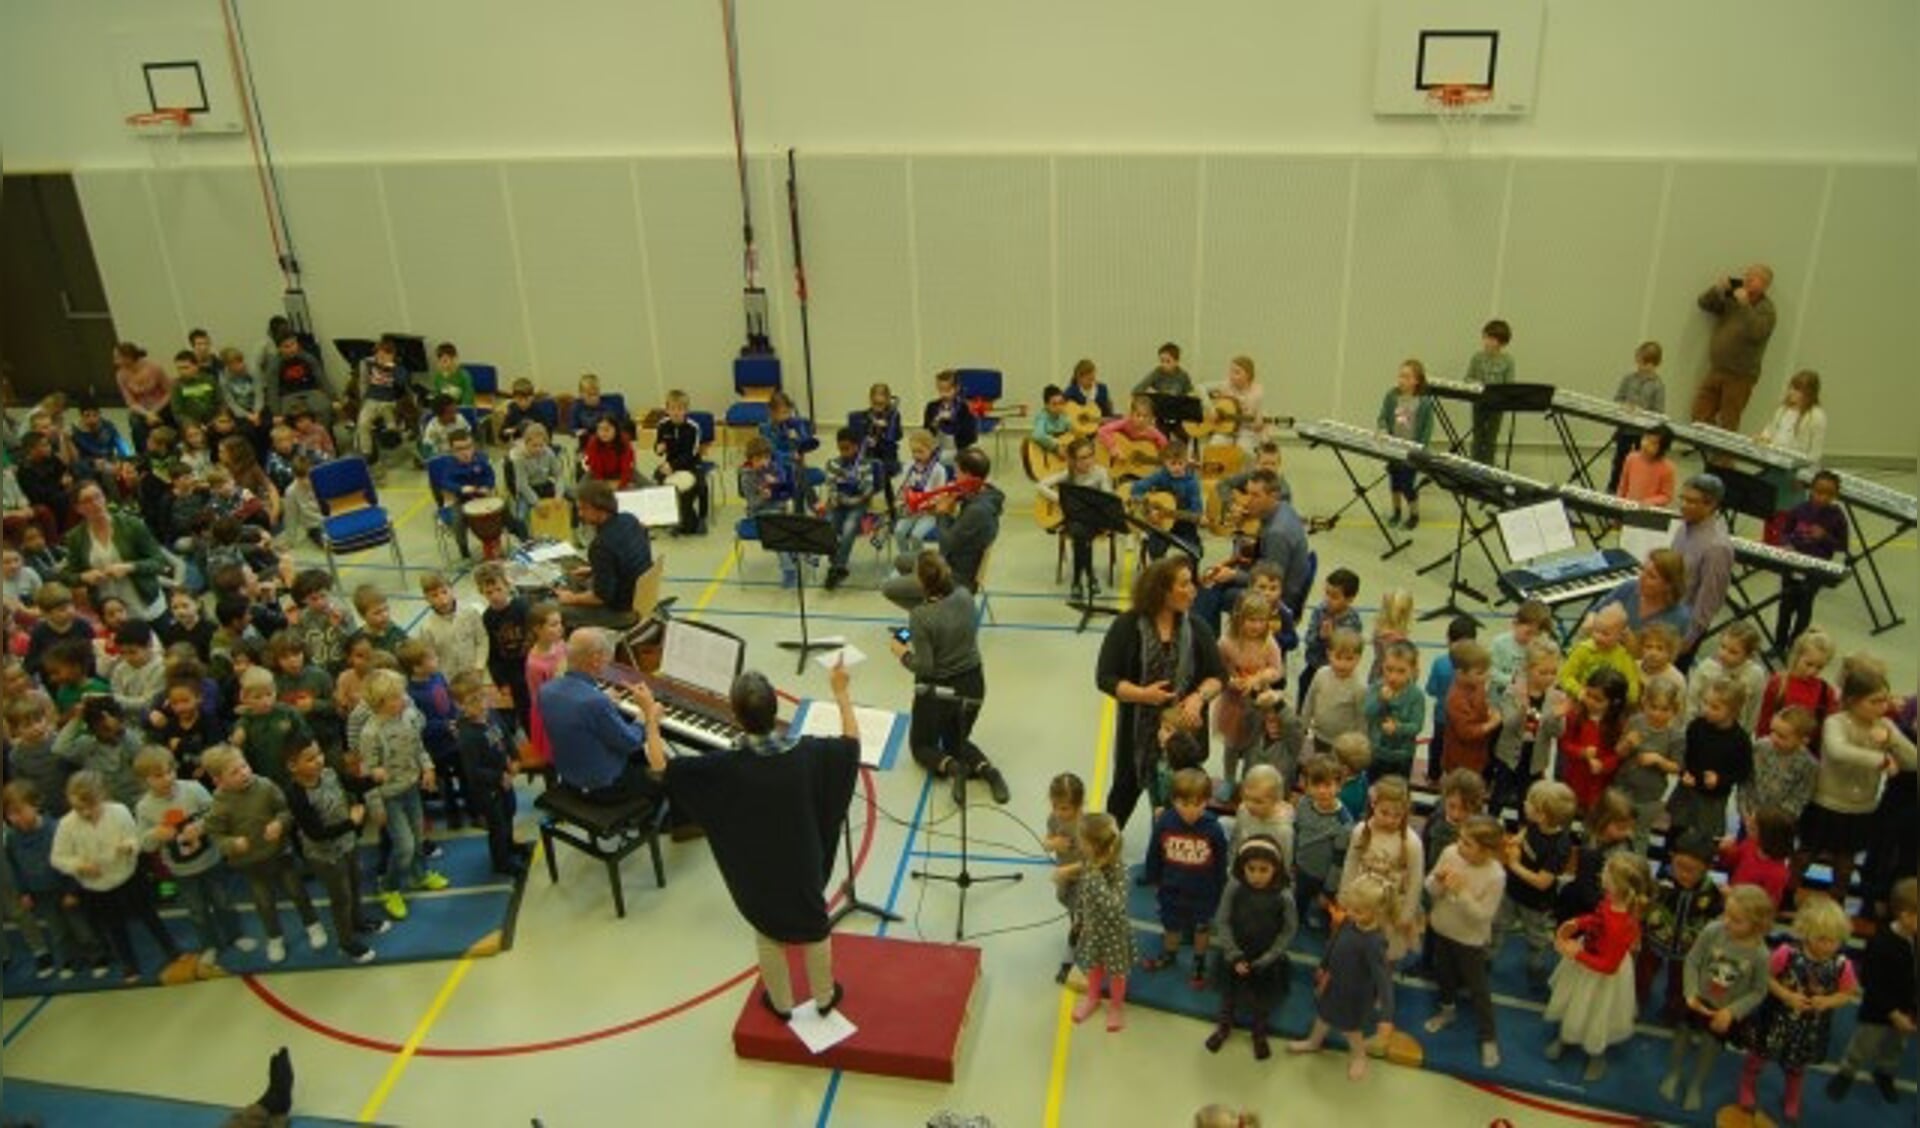 Joke Firet dirigeert het schoolorkest van basisschool De Regenboog. 